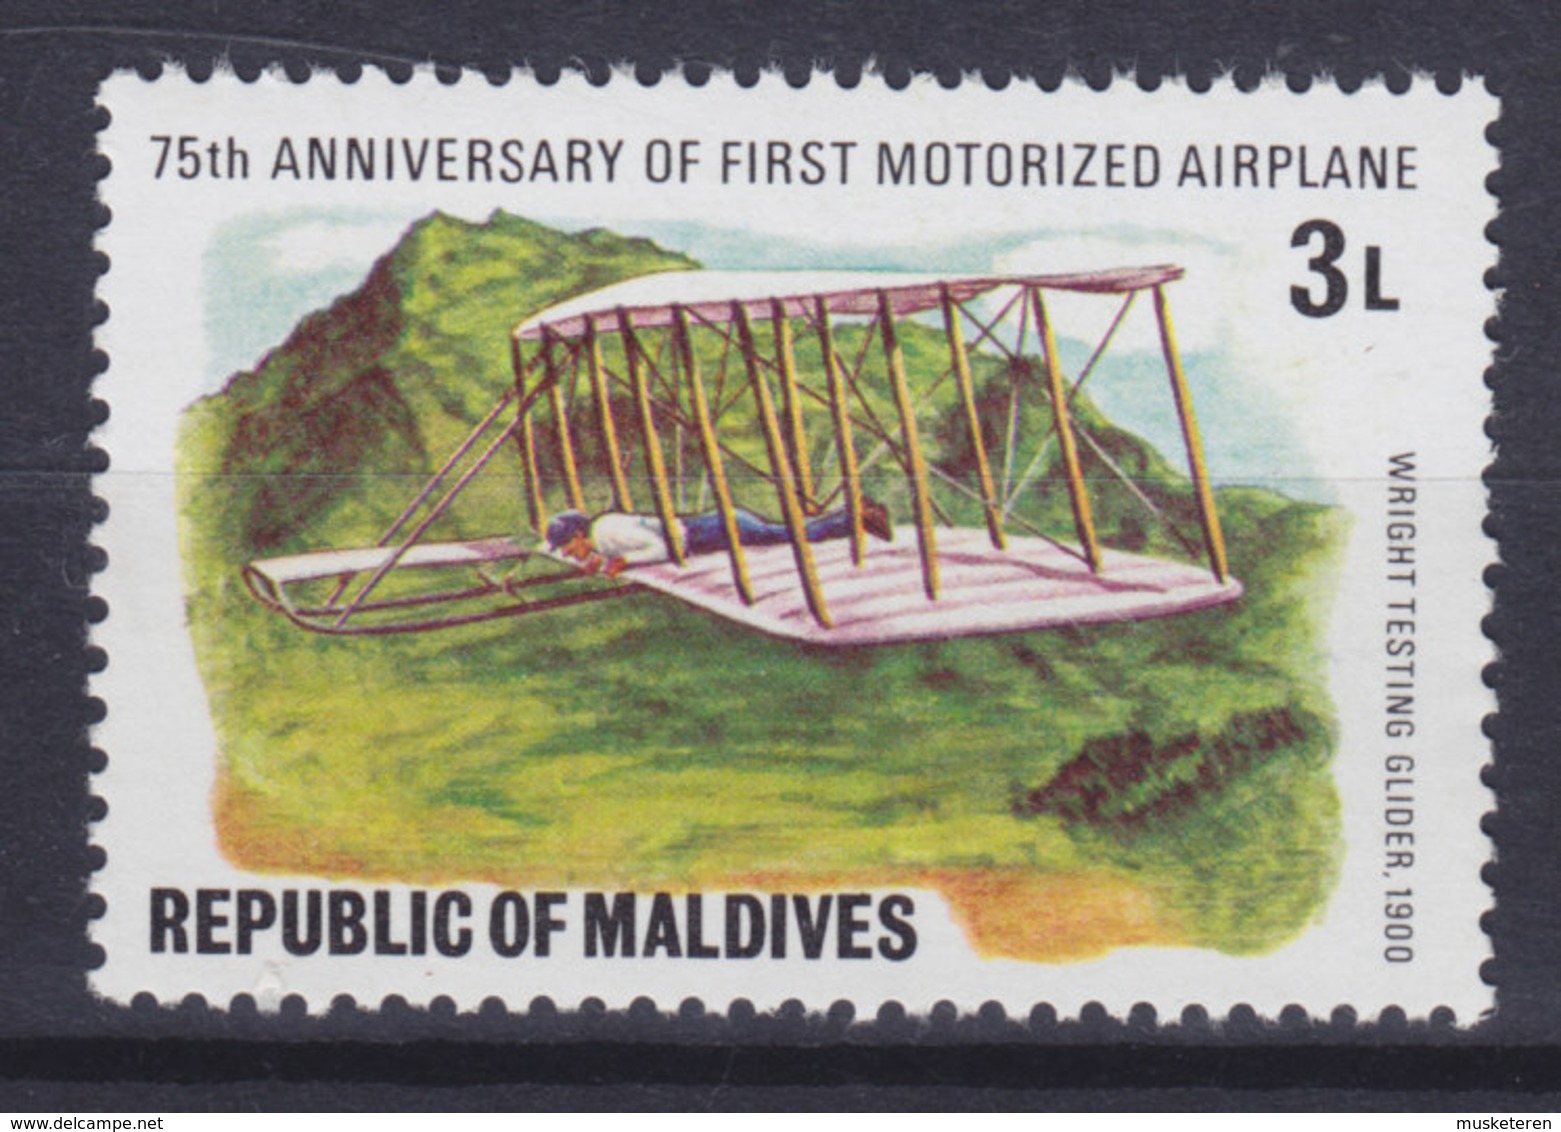 Maldives 1978 Mi. 742    3 L Motorflugzeuge Motor Airplanes Wright Testing Glider (1900), MNH** - Maldivas (...-1965)